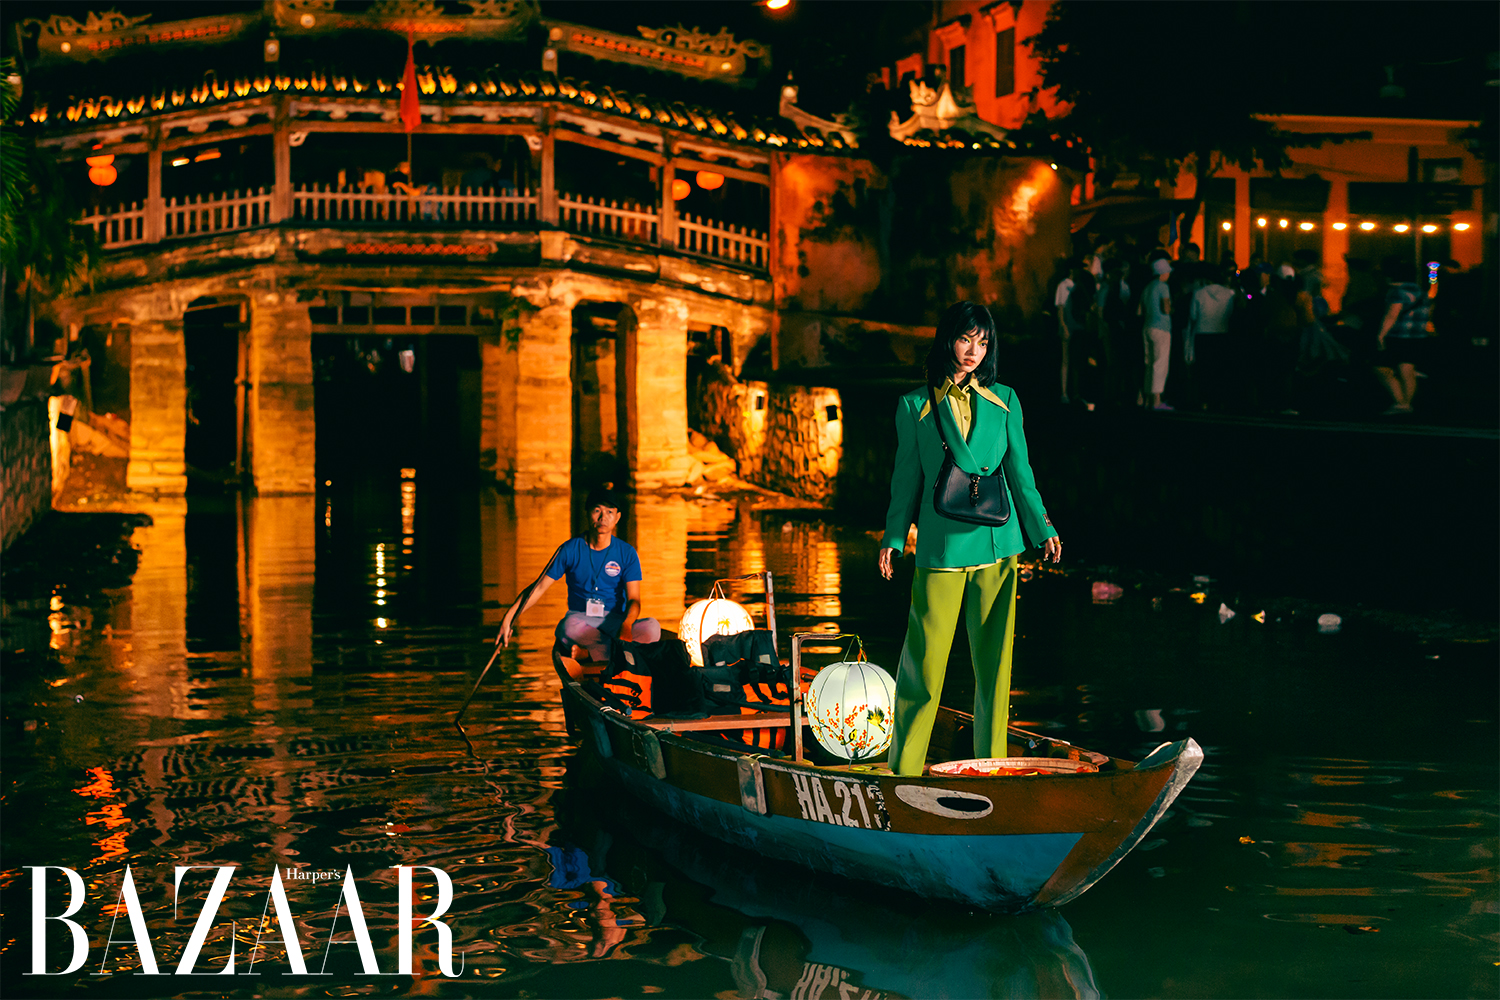 Harper's Bazaar_Bộ ảnh Châu Bùi Gucci tại Hội An_01